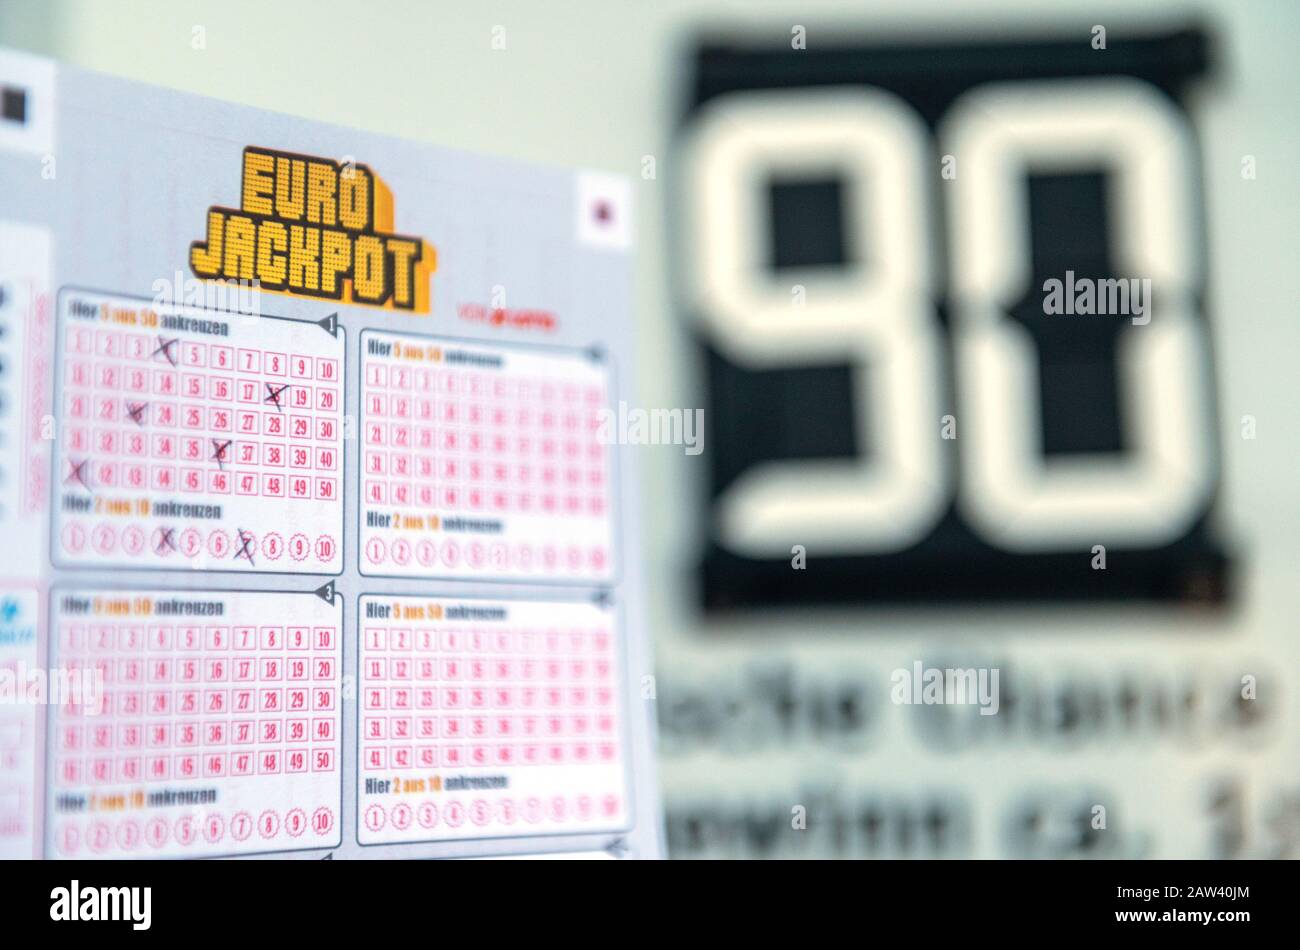 Cuánto cuesta el eurojackpot